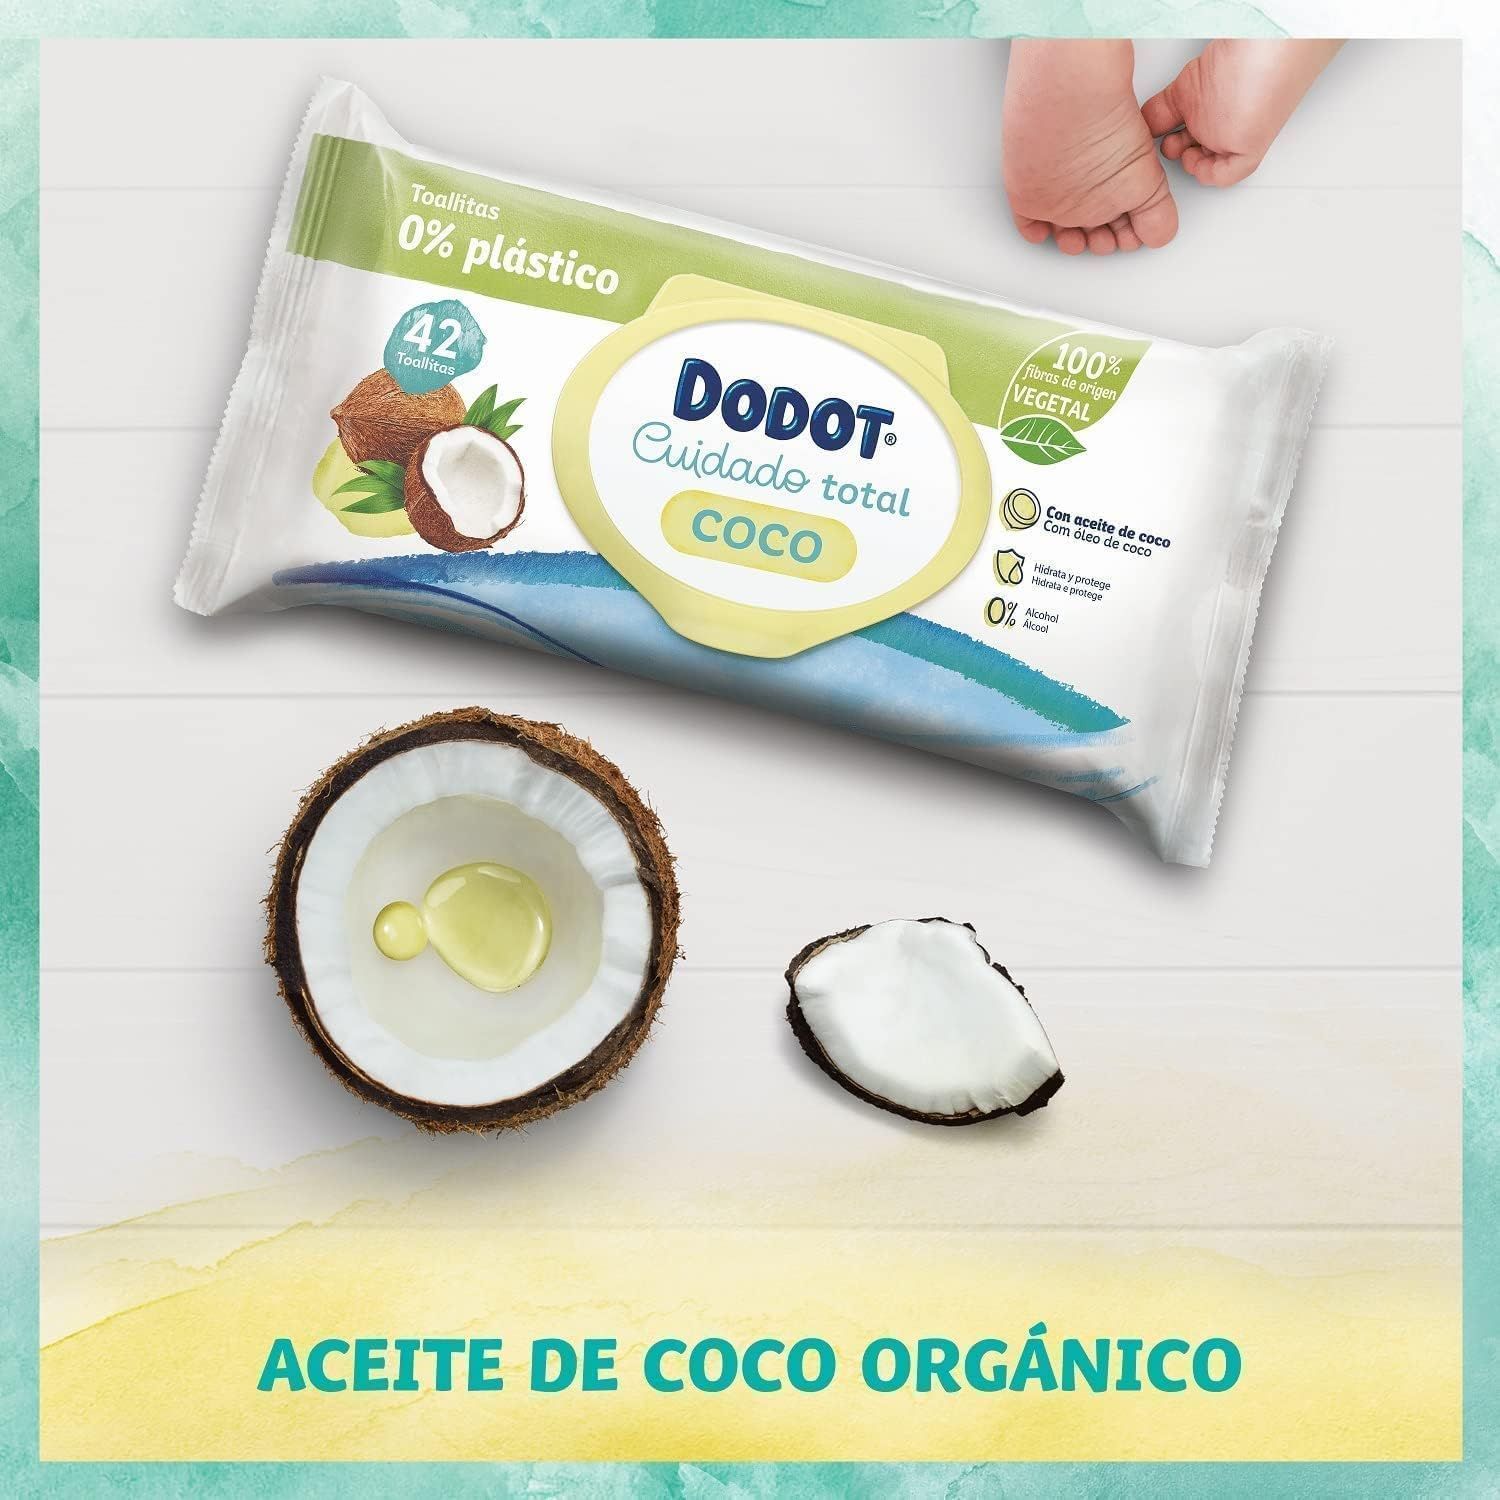 Toallitas Dodot Cuidado Total Coco: ¡Descubre la suavidad del coco para la piel de tu bebé!